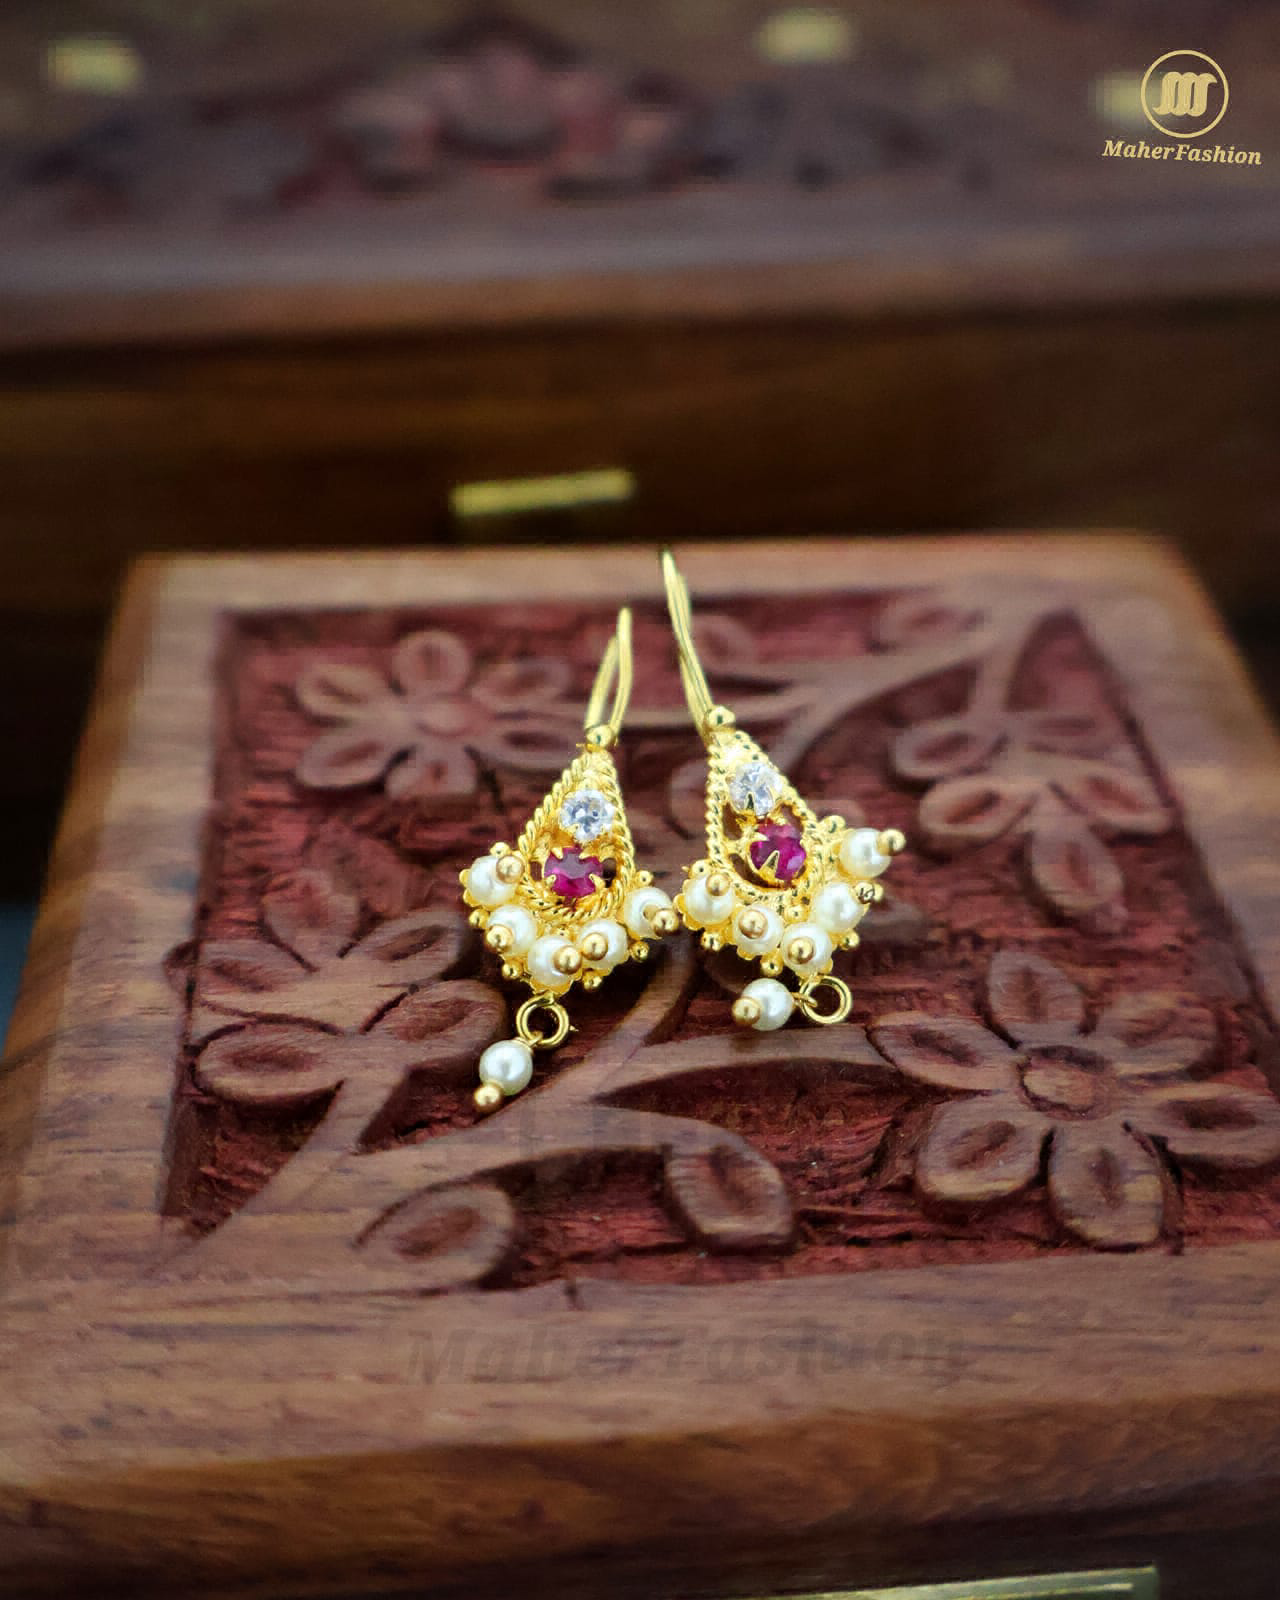 Classic Golden Bugdi Earrings|Maherfashion